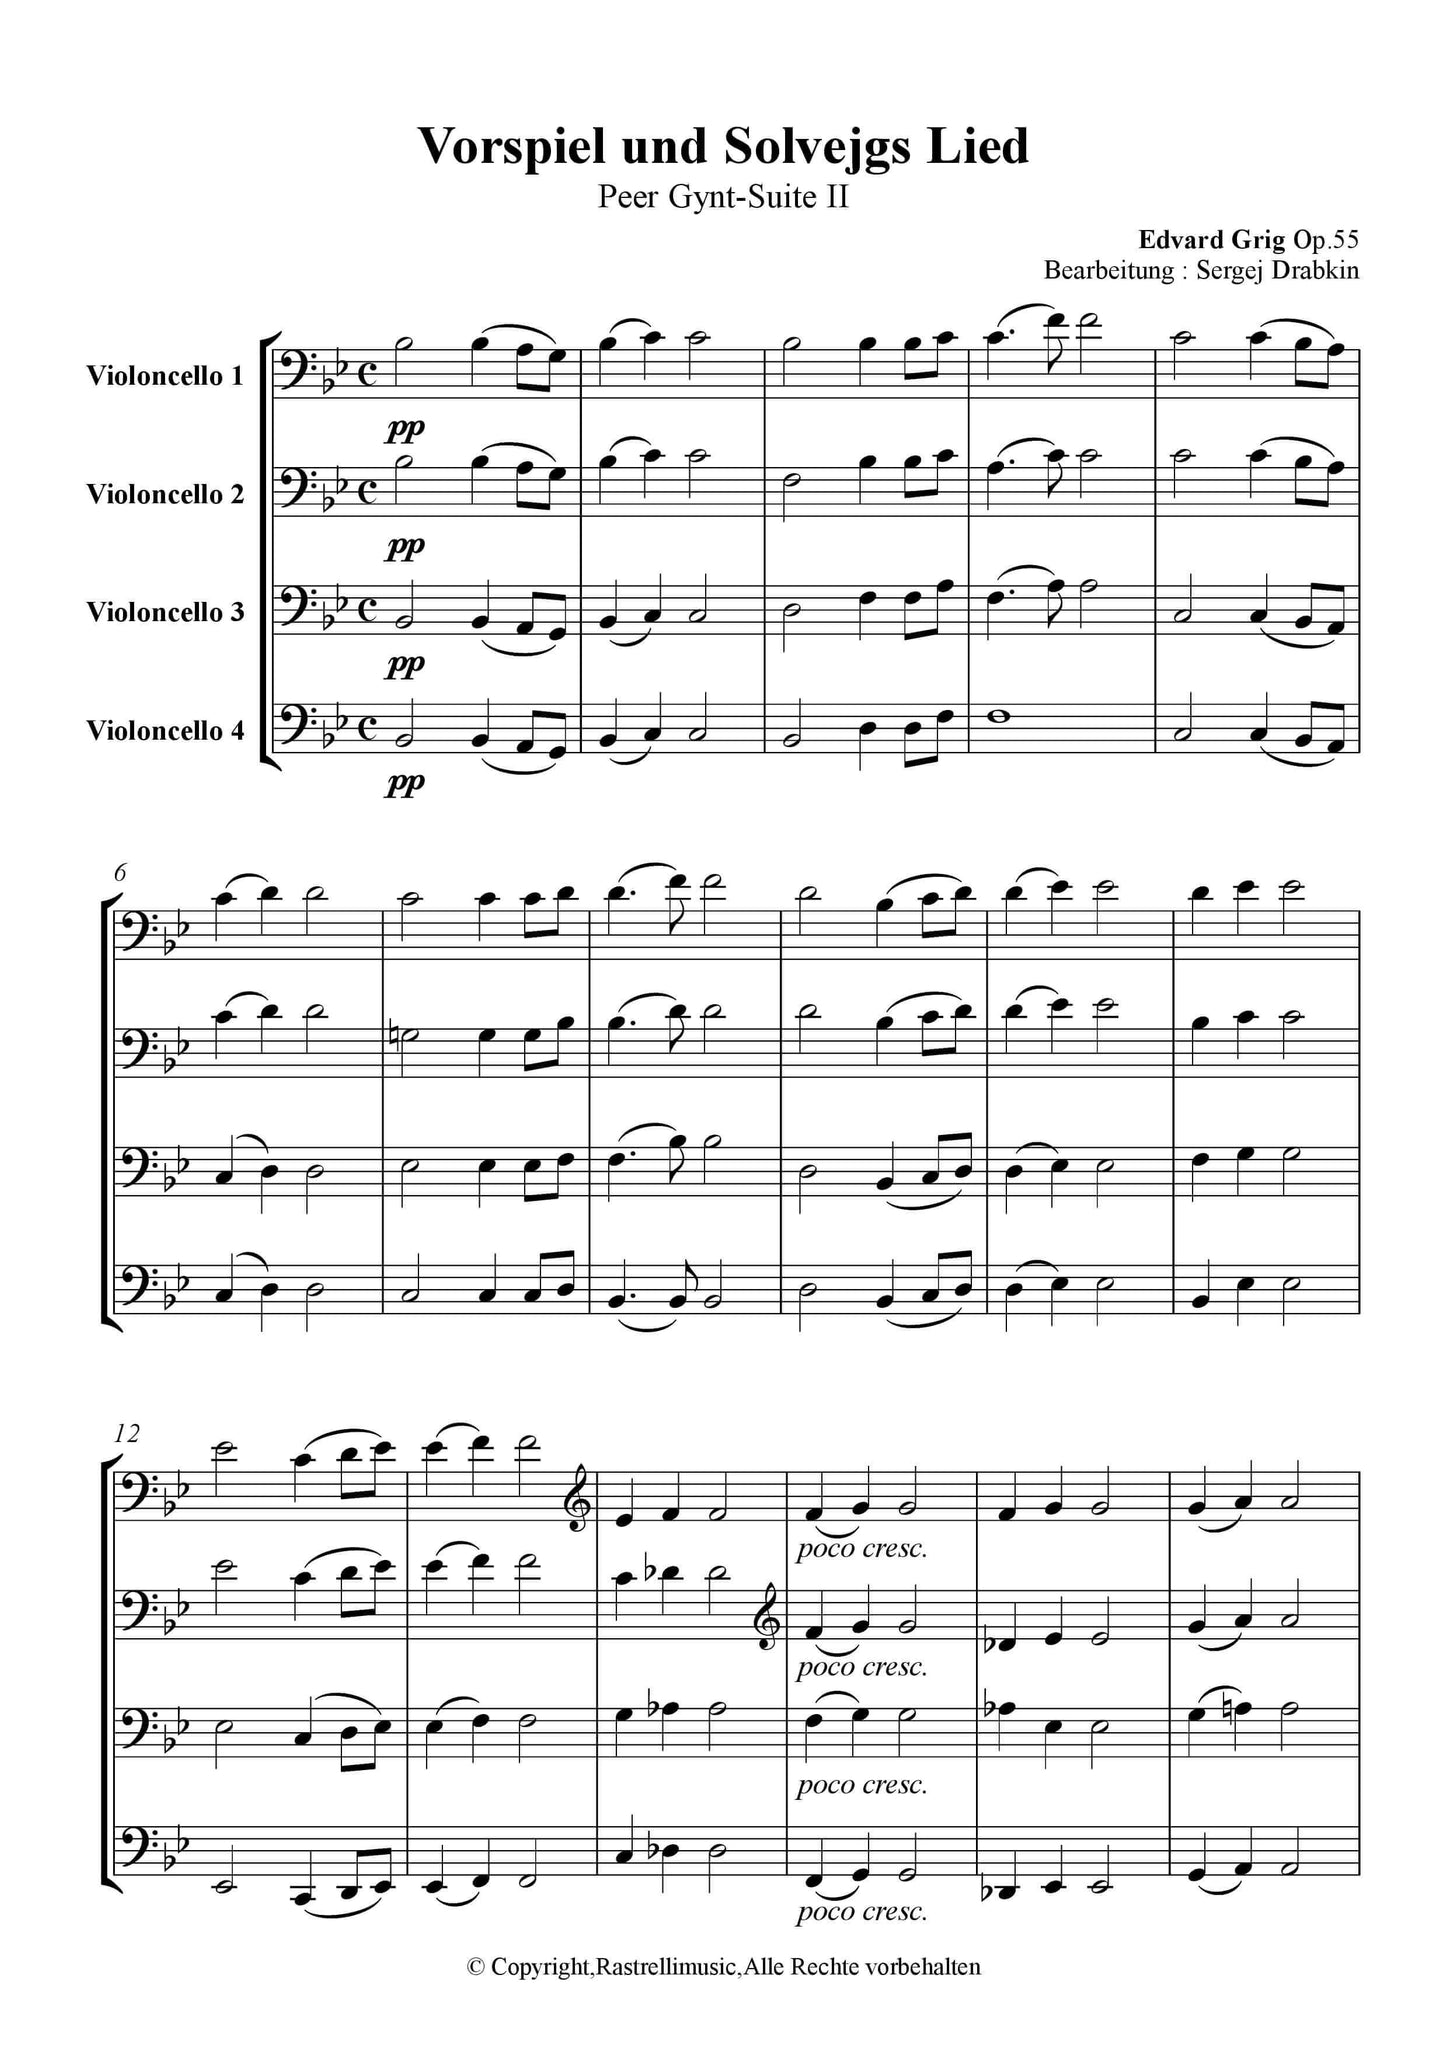 Grieg, Edvard - Vorspiel und Solveig Song Op.55 (Solveigs Song)